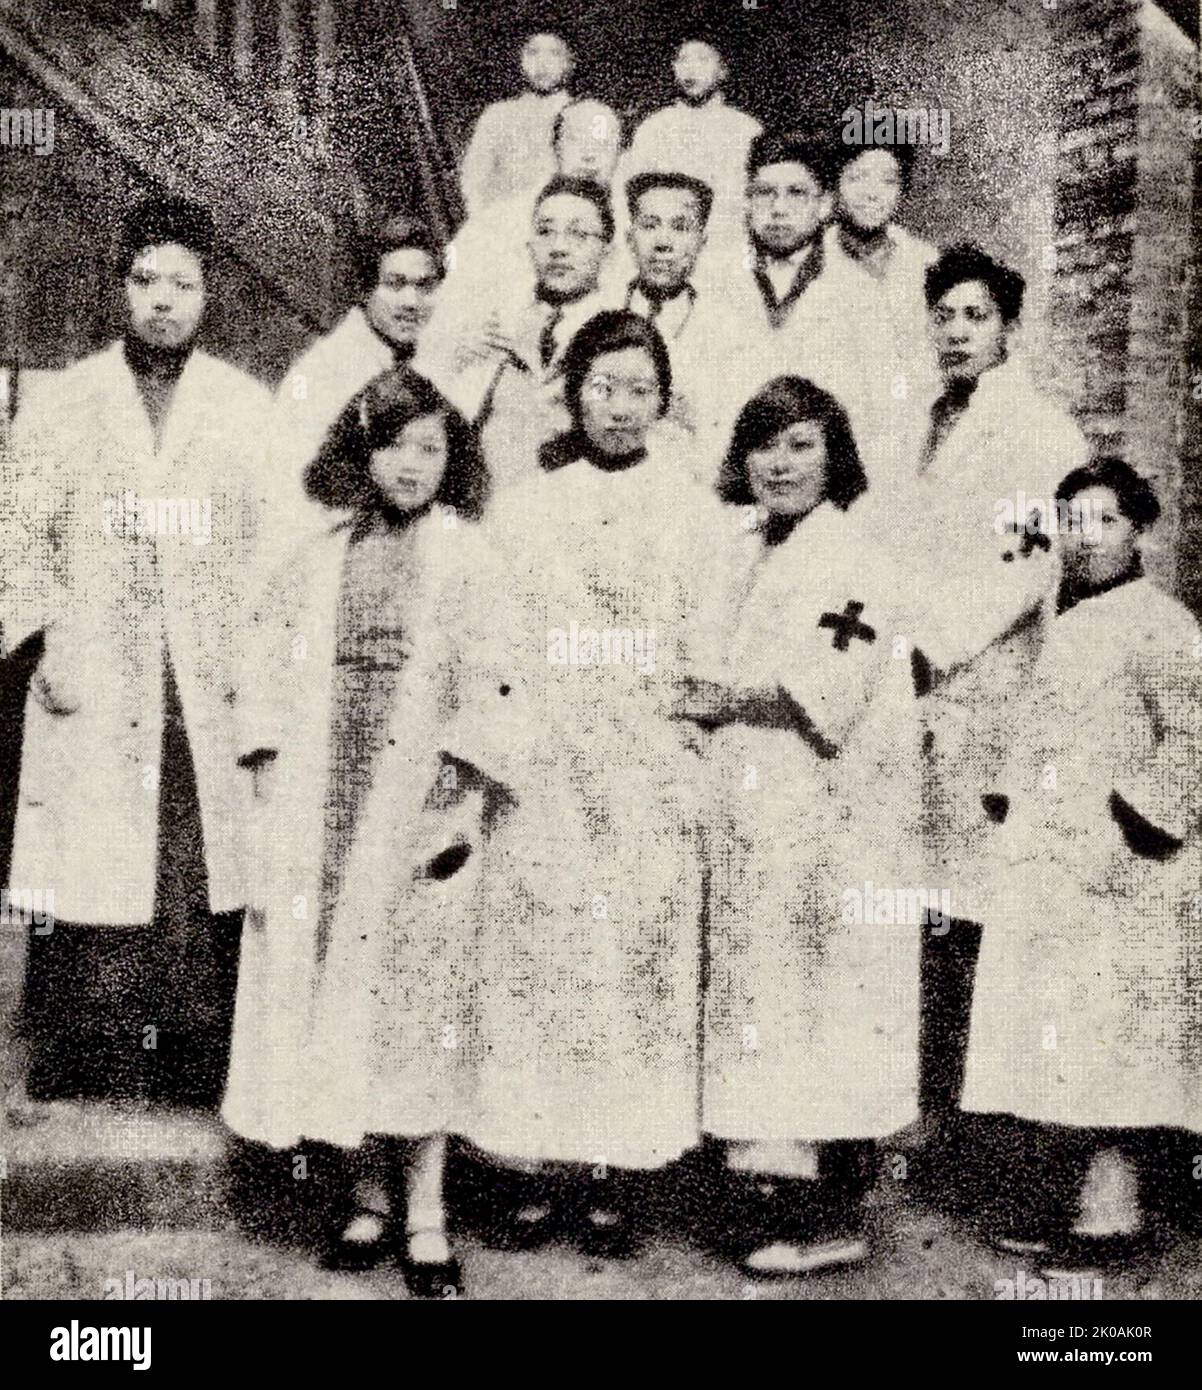 Studenten von medizinischen Schulen in Shanghai nehmen an medizinischen Arbeiten im Krankenhaus für verwundete Soldaten Teil. Dies geschah während der japanischen Invasion in China. Stockfoto